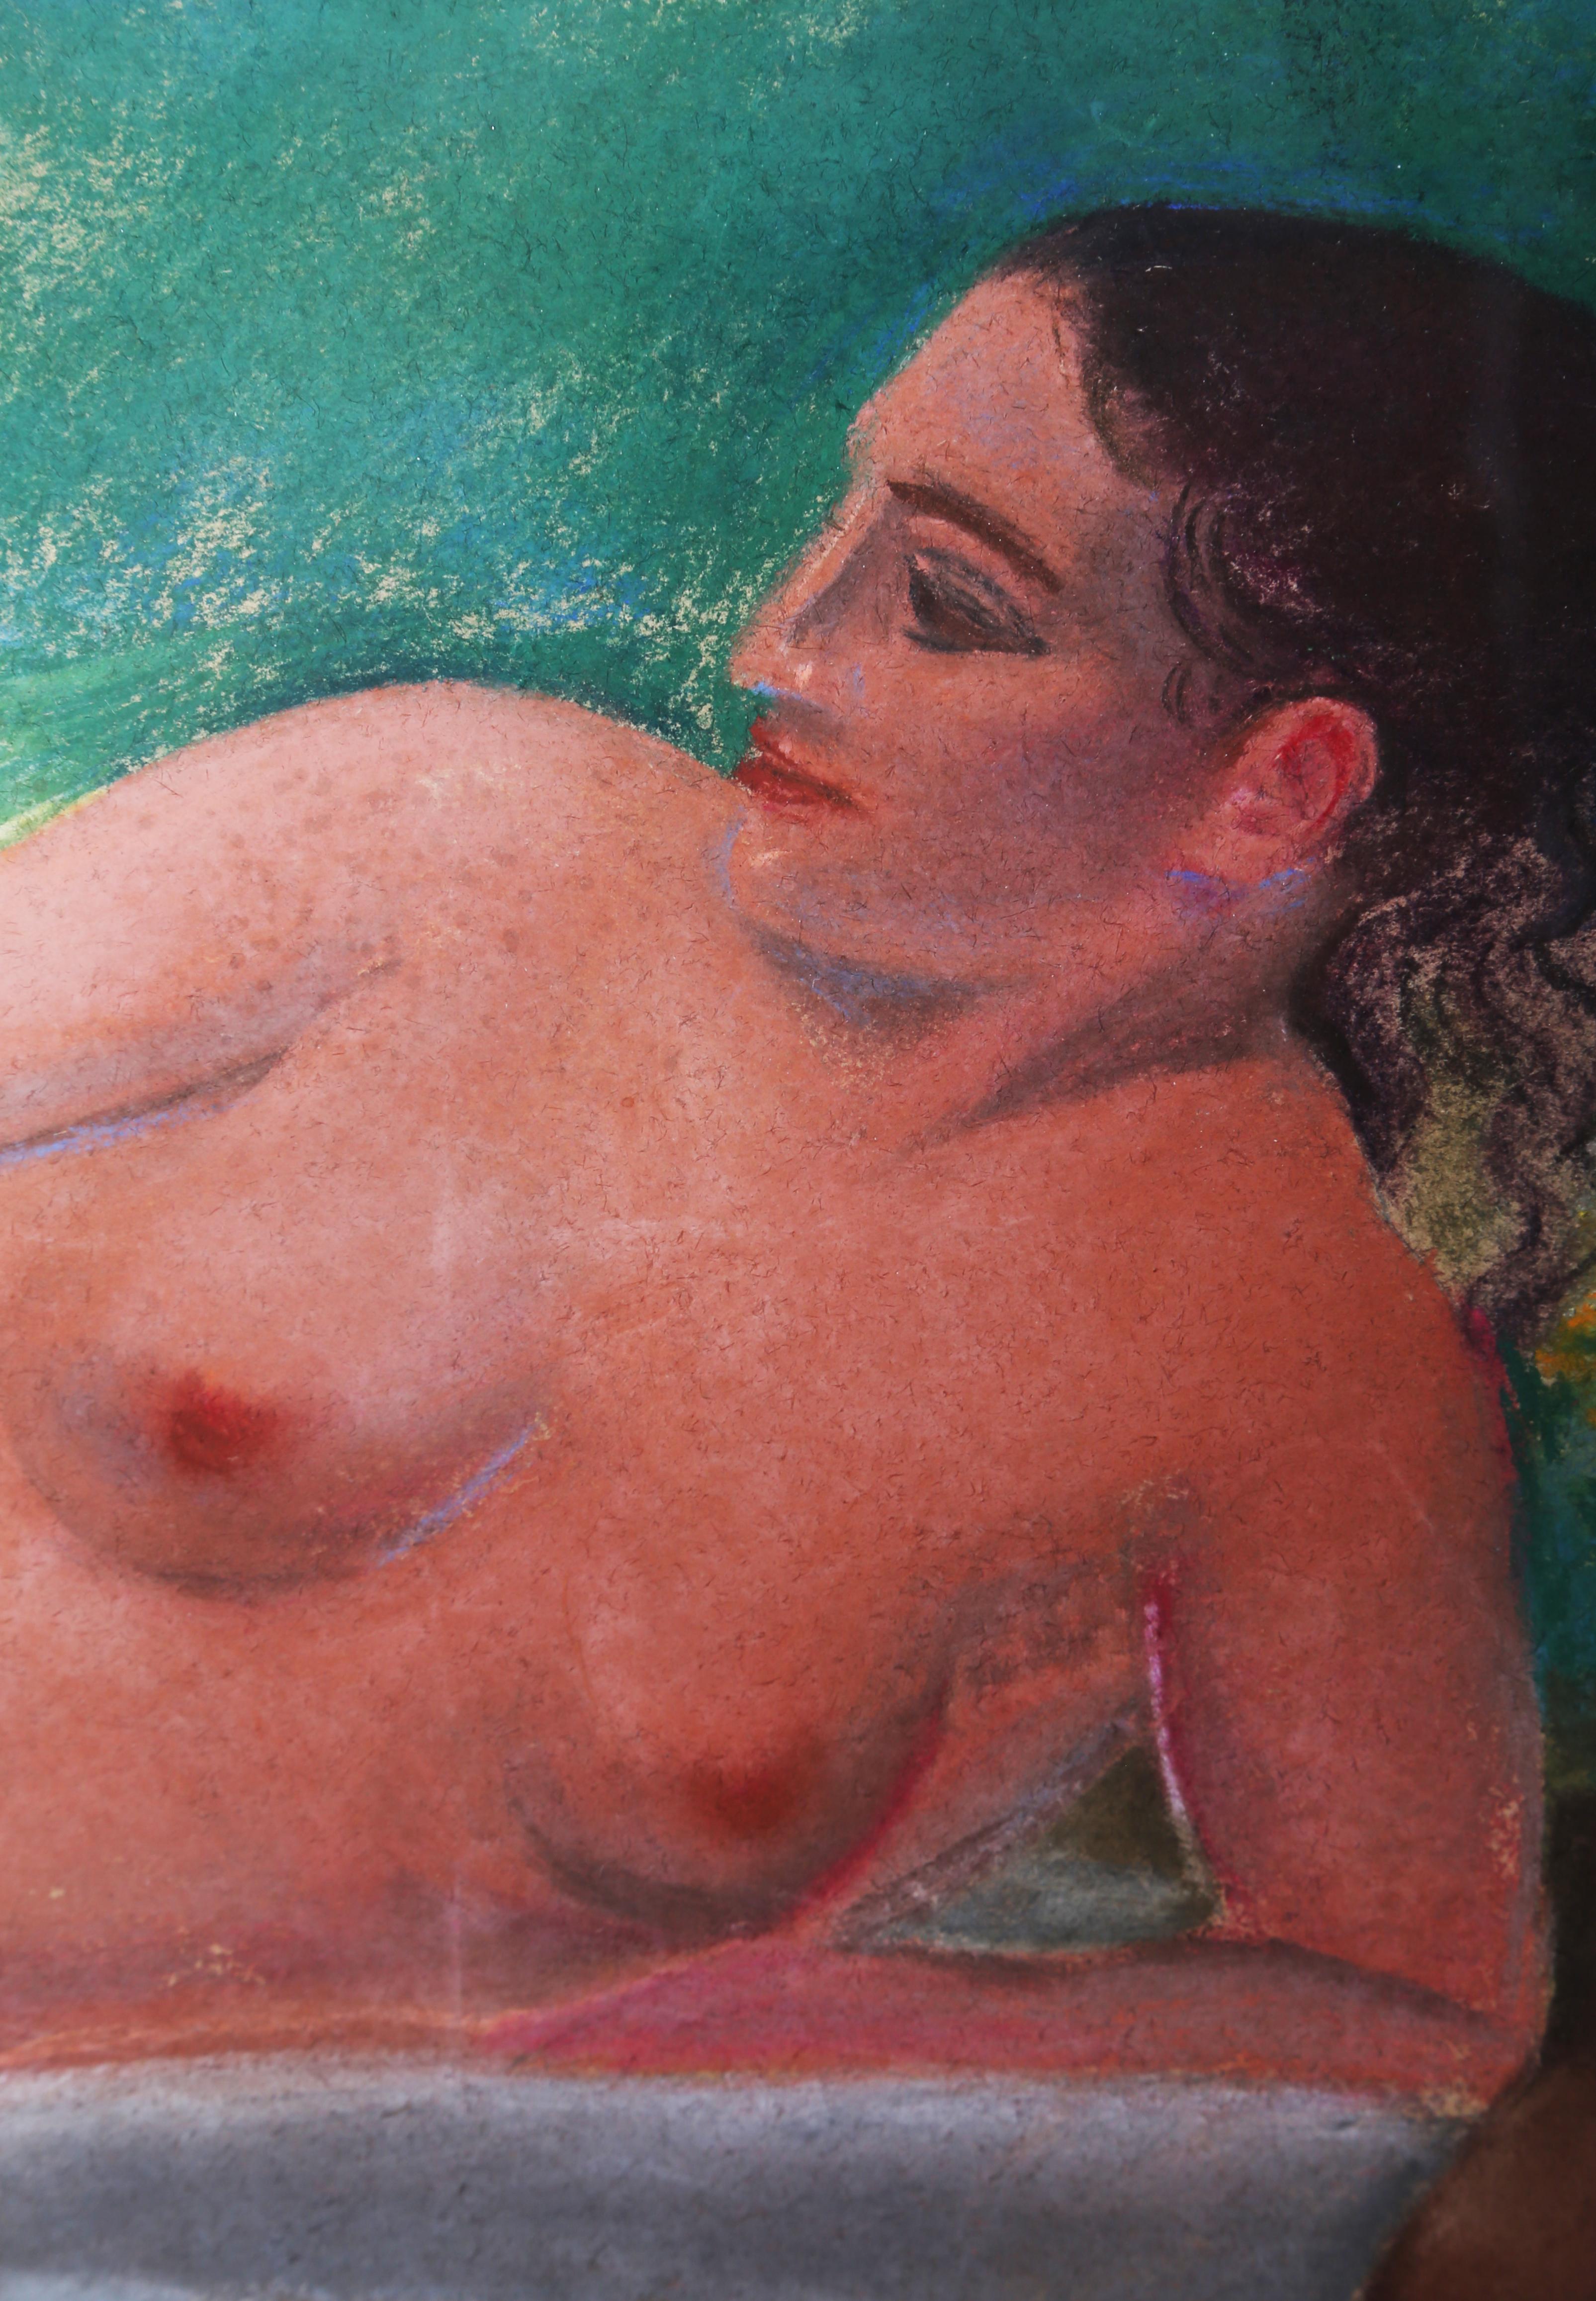 Dieses liegende Aktporträt einer Frau bei einem Picknick stellt verschiedene kunsthistorische Bezüge her. Die kräftigen, fast neonartigen Farben erinnern an die tropischen Gemälde, die Gauguin Ende des 19. Jahrhunderts schuf. Die Szenerie erinnert